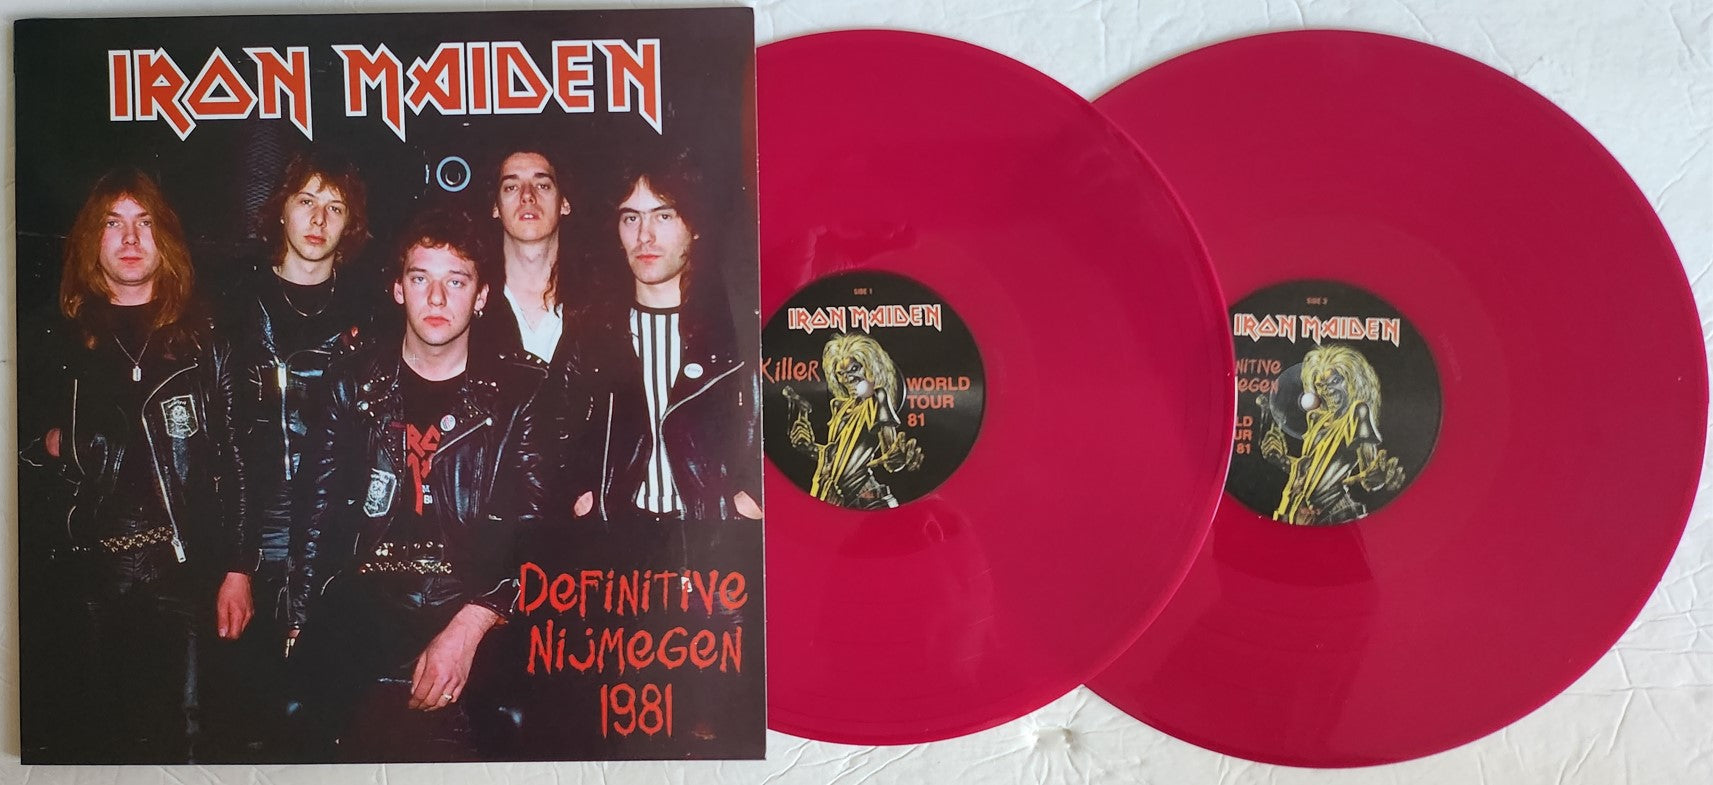 Iron Maiden - Definitive Nijmegen Killer World Tour 1981 [2LP] Limited Edition Colored Vinyl (import)